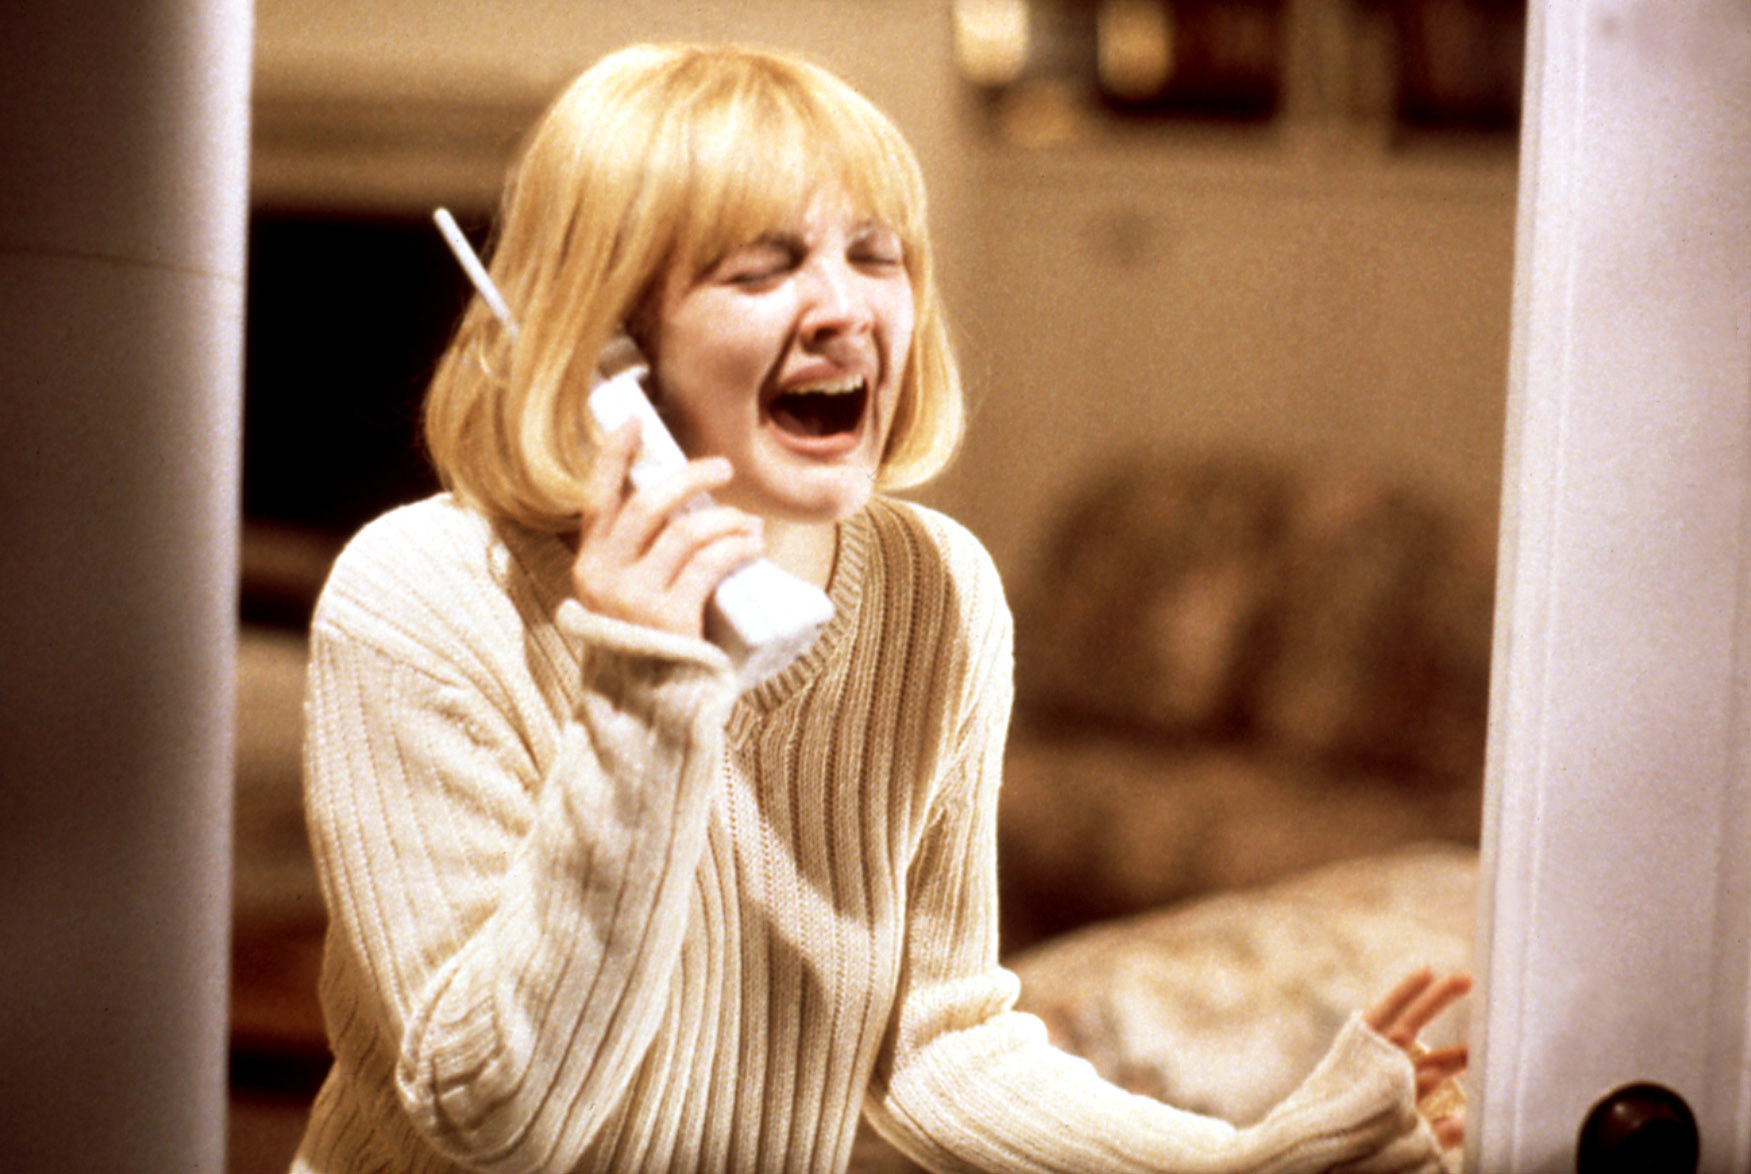 Drew Barrymore in Scream, screaming